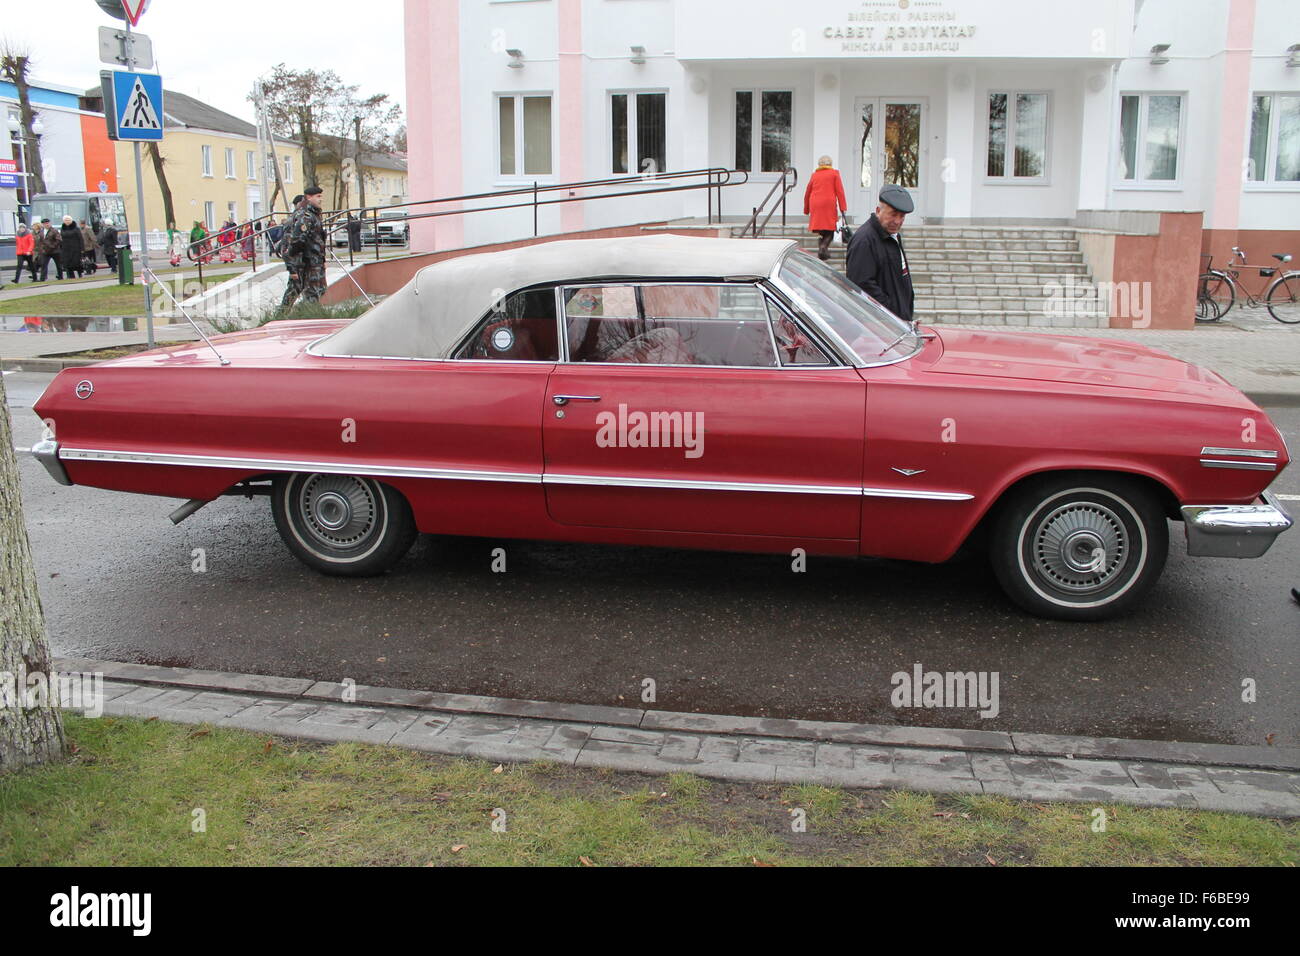 stilvolle rotes Auto markieren "Chrysler" Ausstellung von Retro-Auto, 16. November 2015, November, Weißrussland Stockfoto